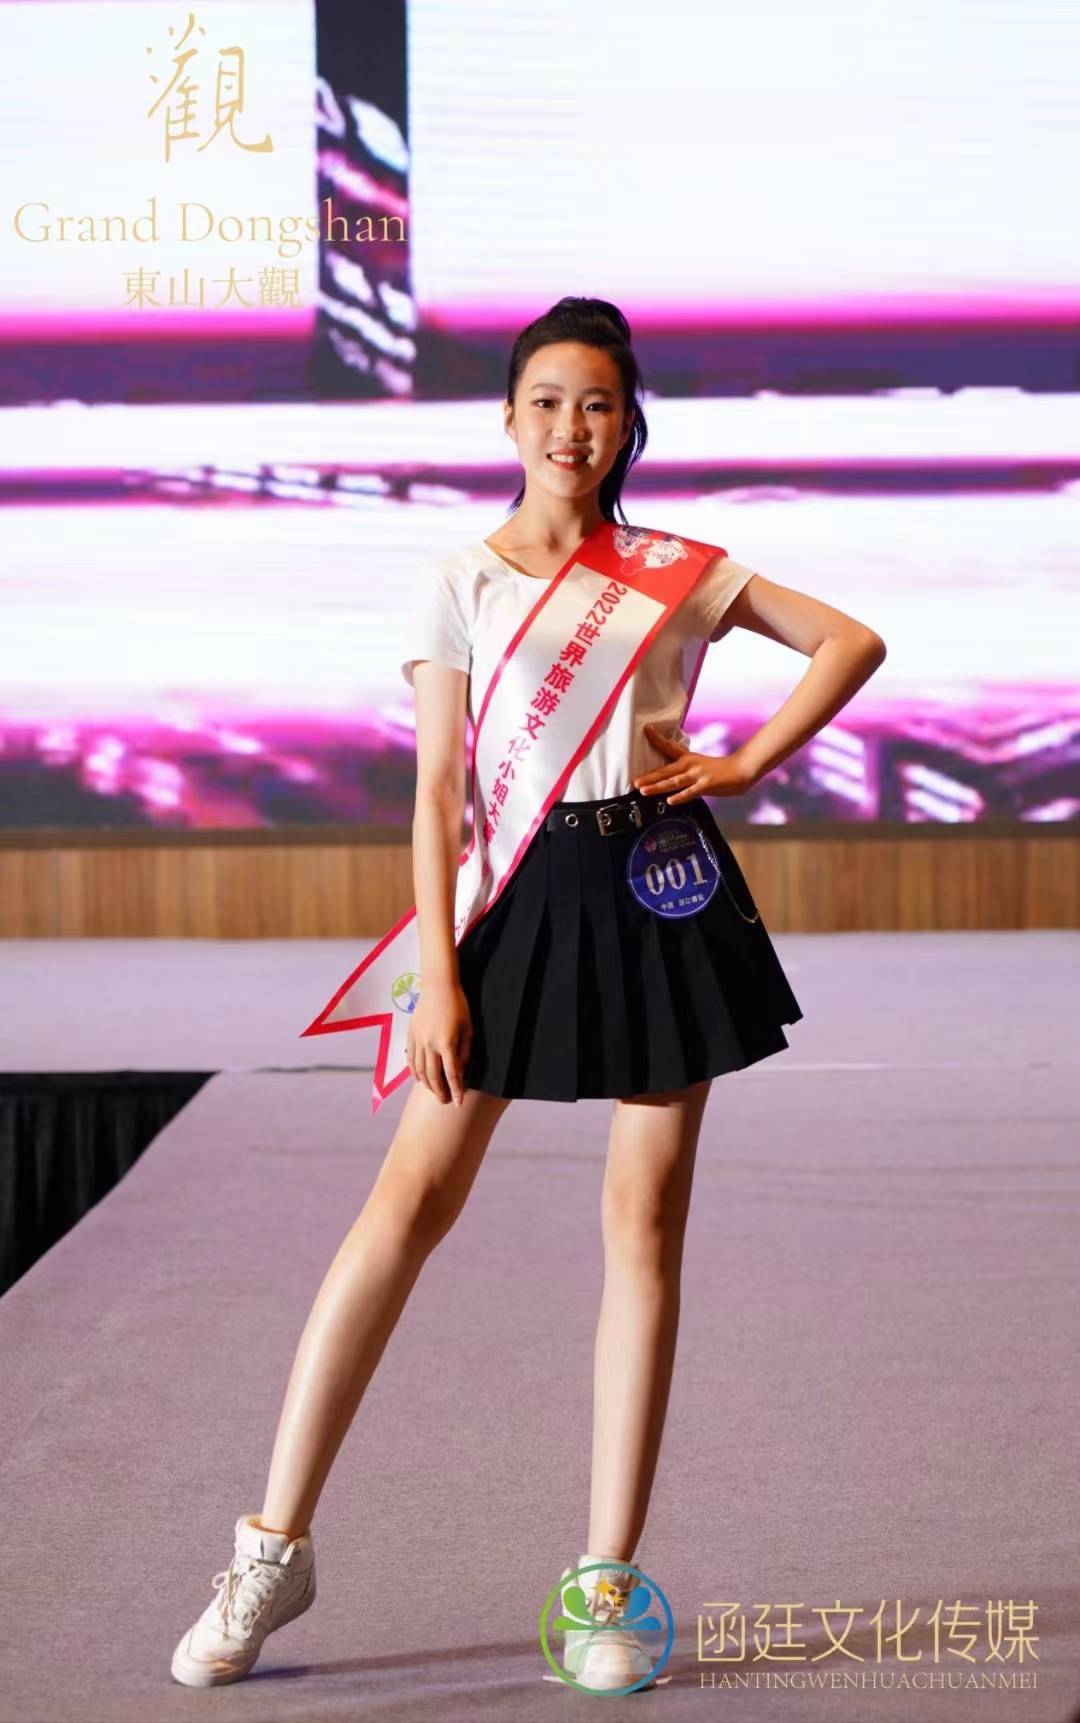 中国传媒大学校花王吉米夺冠,2022世界旅游文化小姐大赛浙江赛区